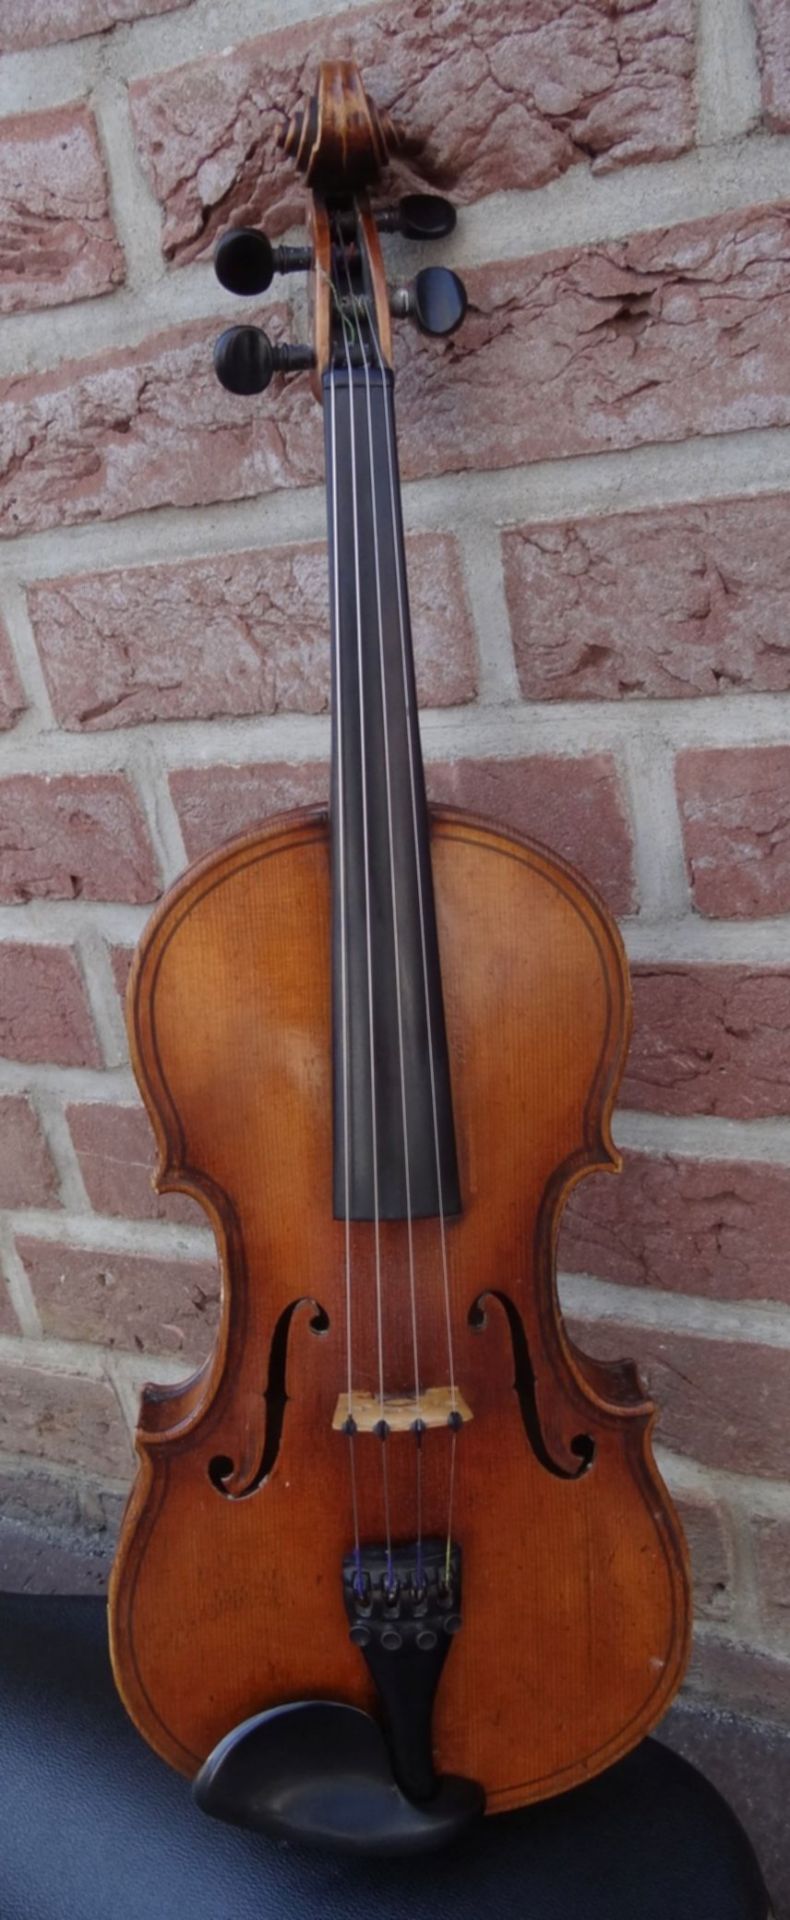 alte Geige im Koffer, innen Etikett "Ciovan Paolo Meggine", 19/20 Jhd?, L-62 cm, gut erhalten - Bild 2 aus 10